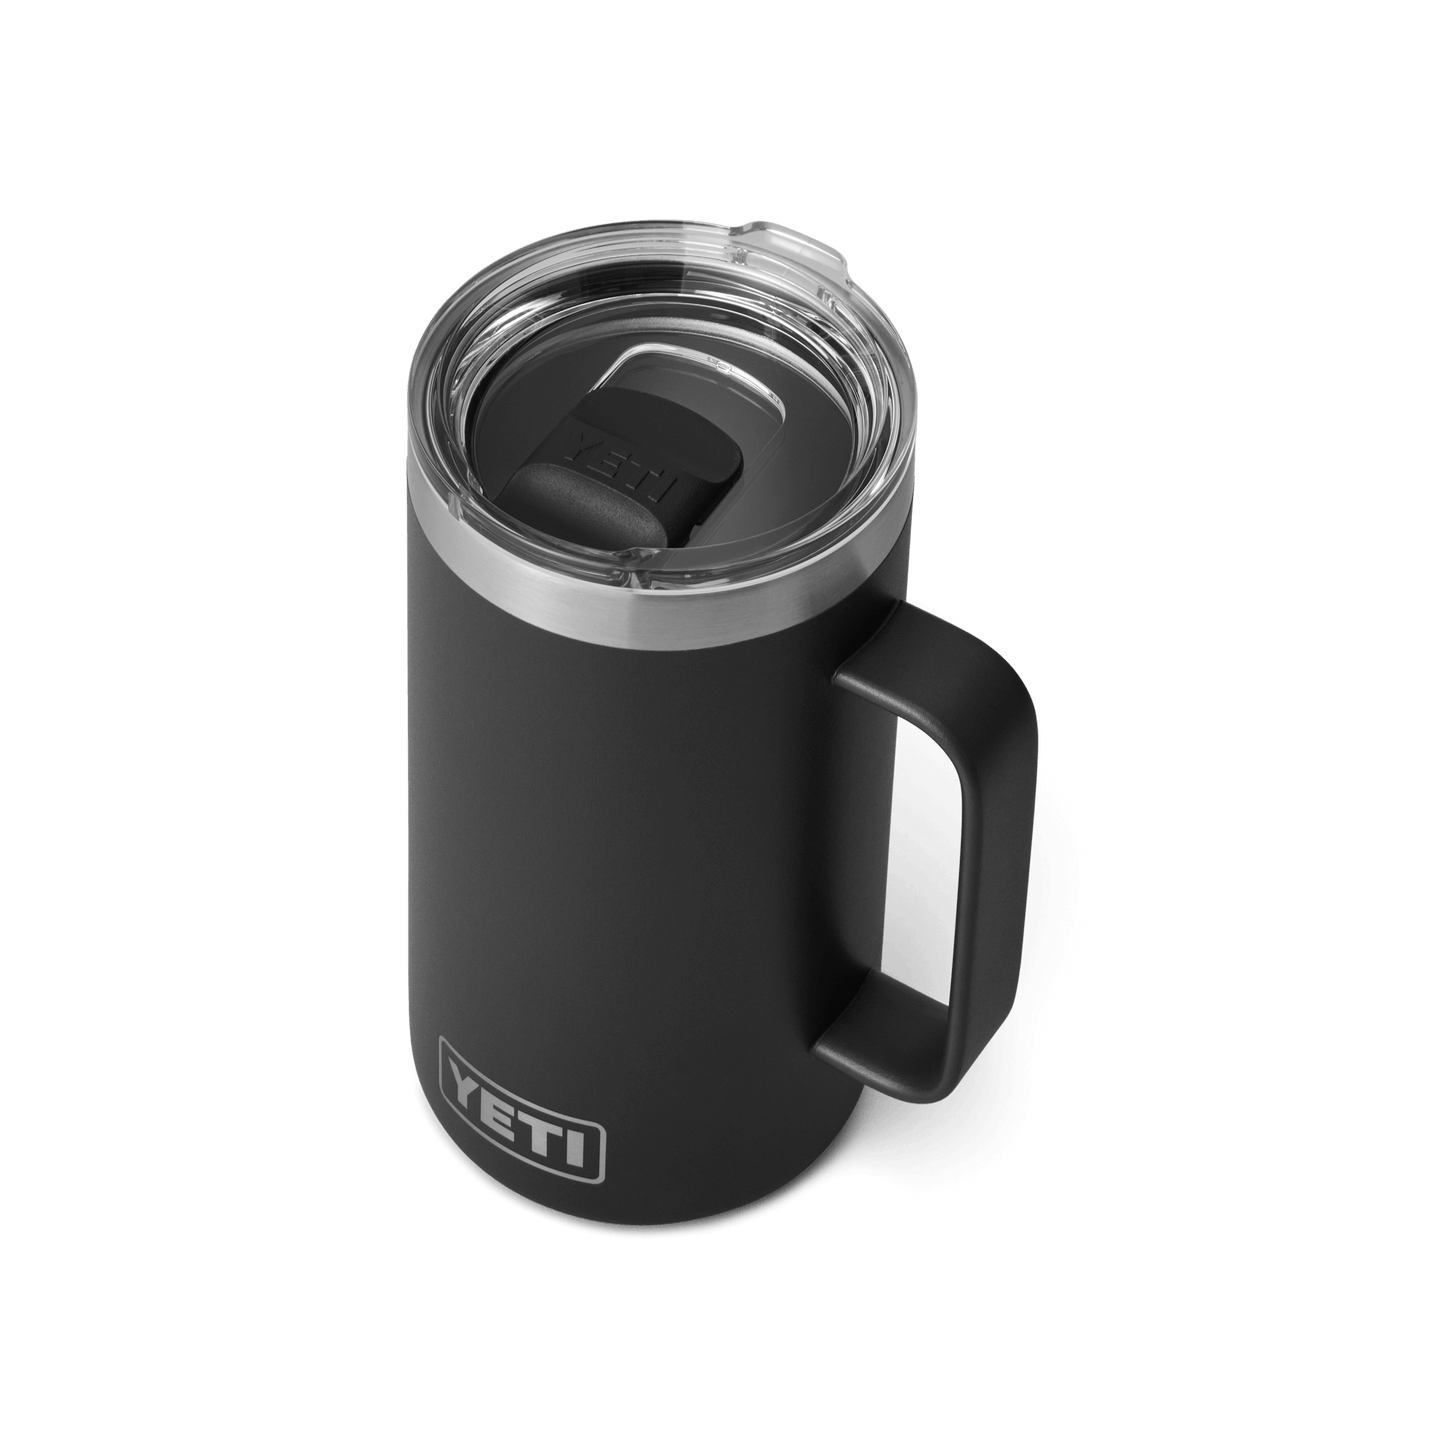 YETI Rambler® 24 oz (710 ml) Mug Black